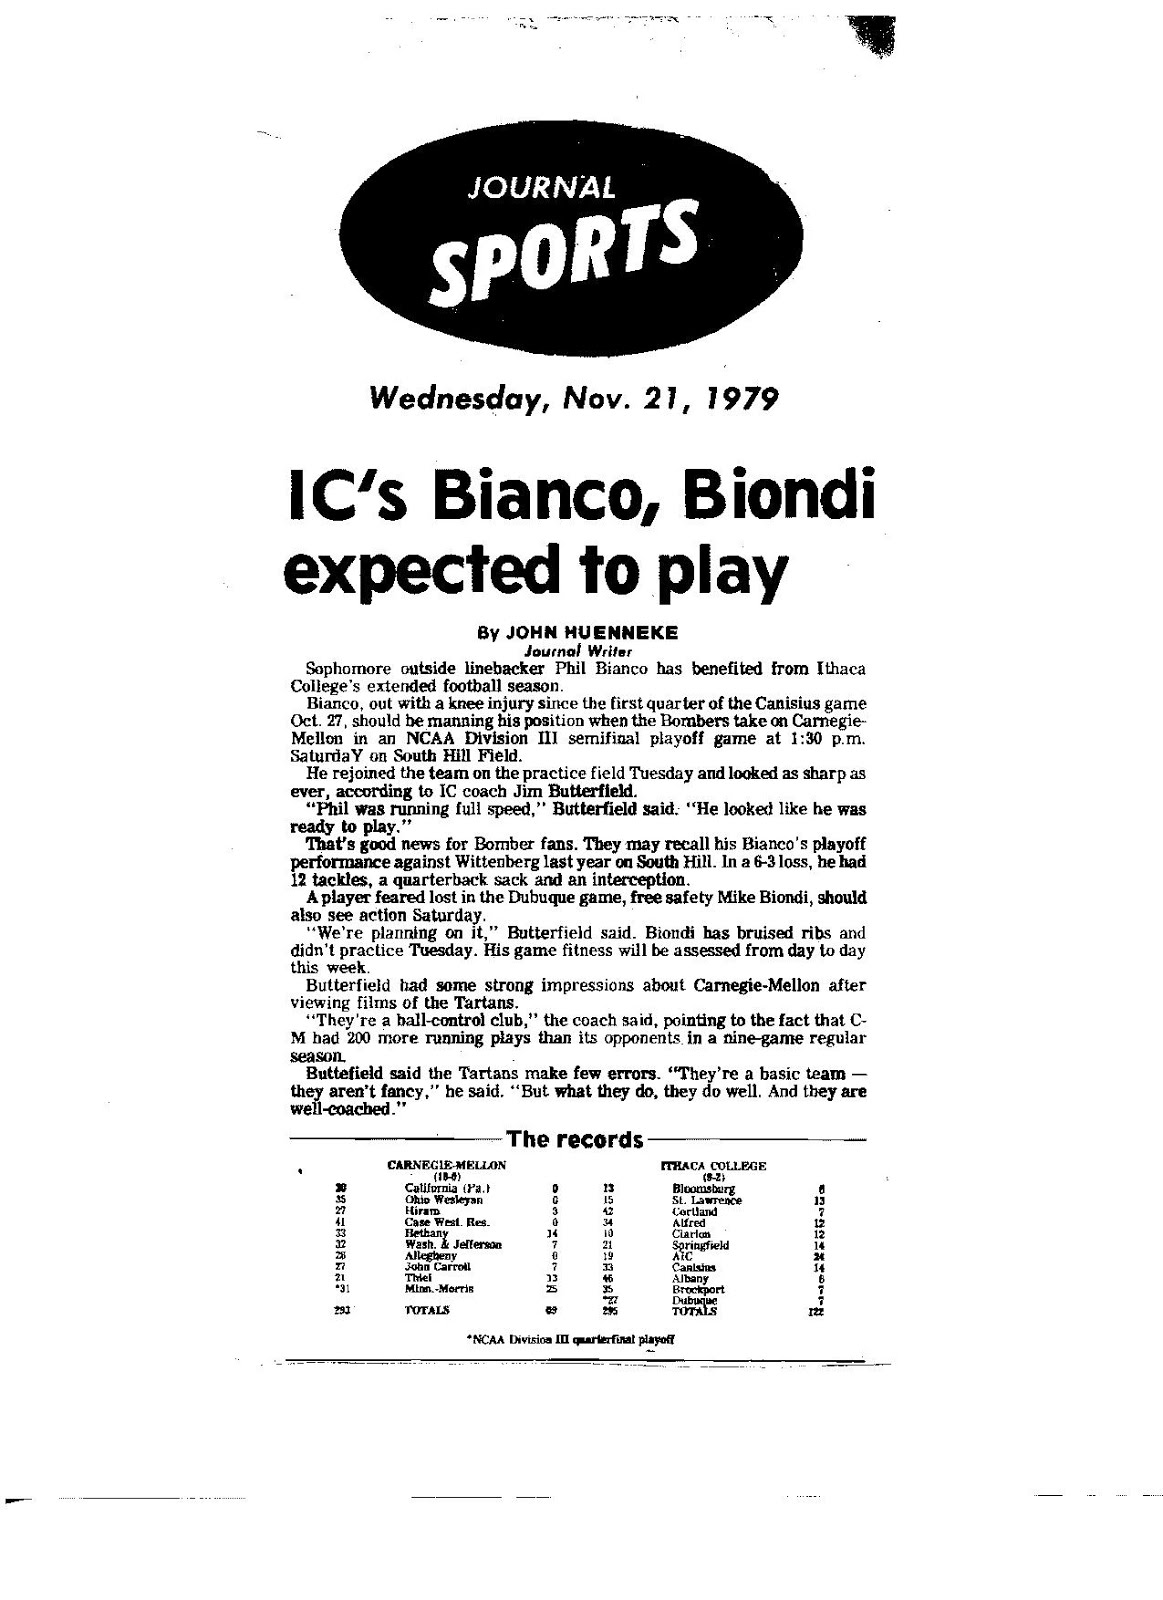 1979 Phillip Bianco knee injury